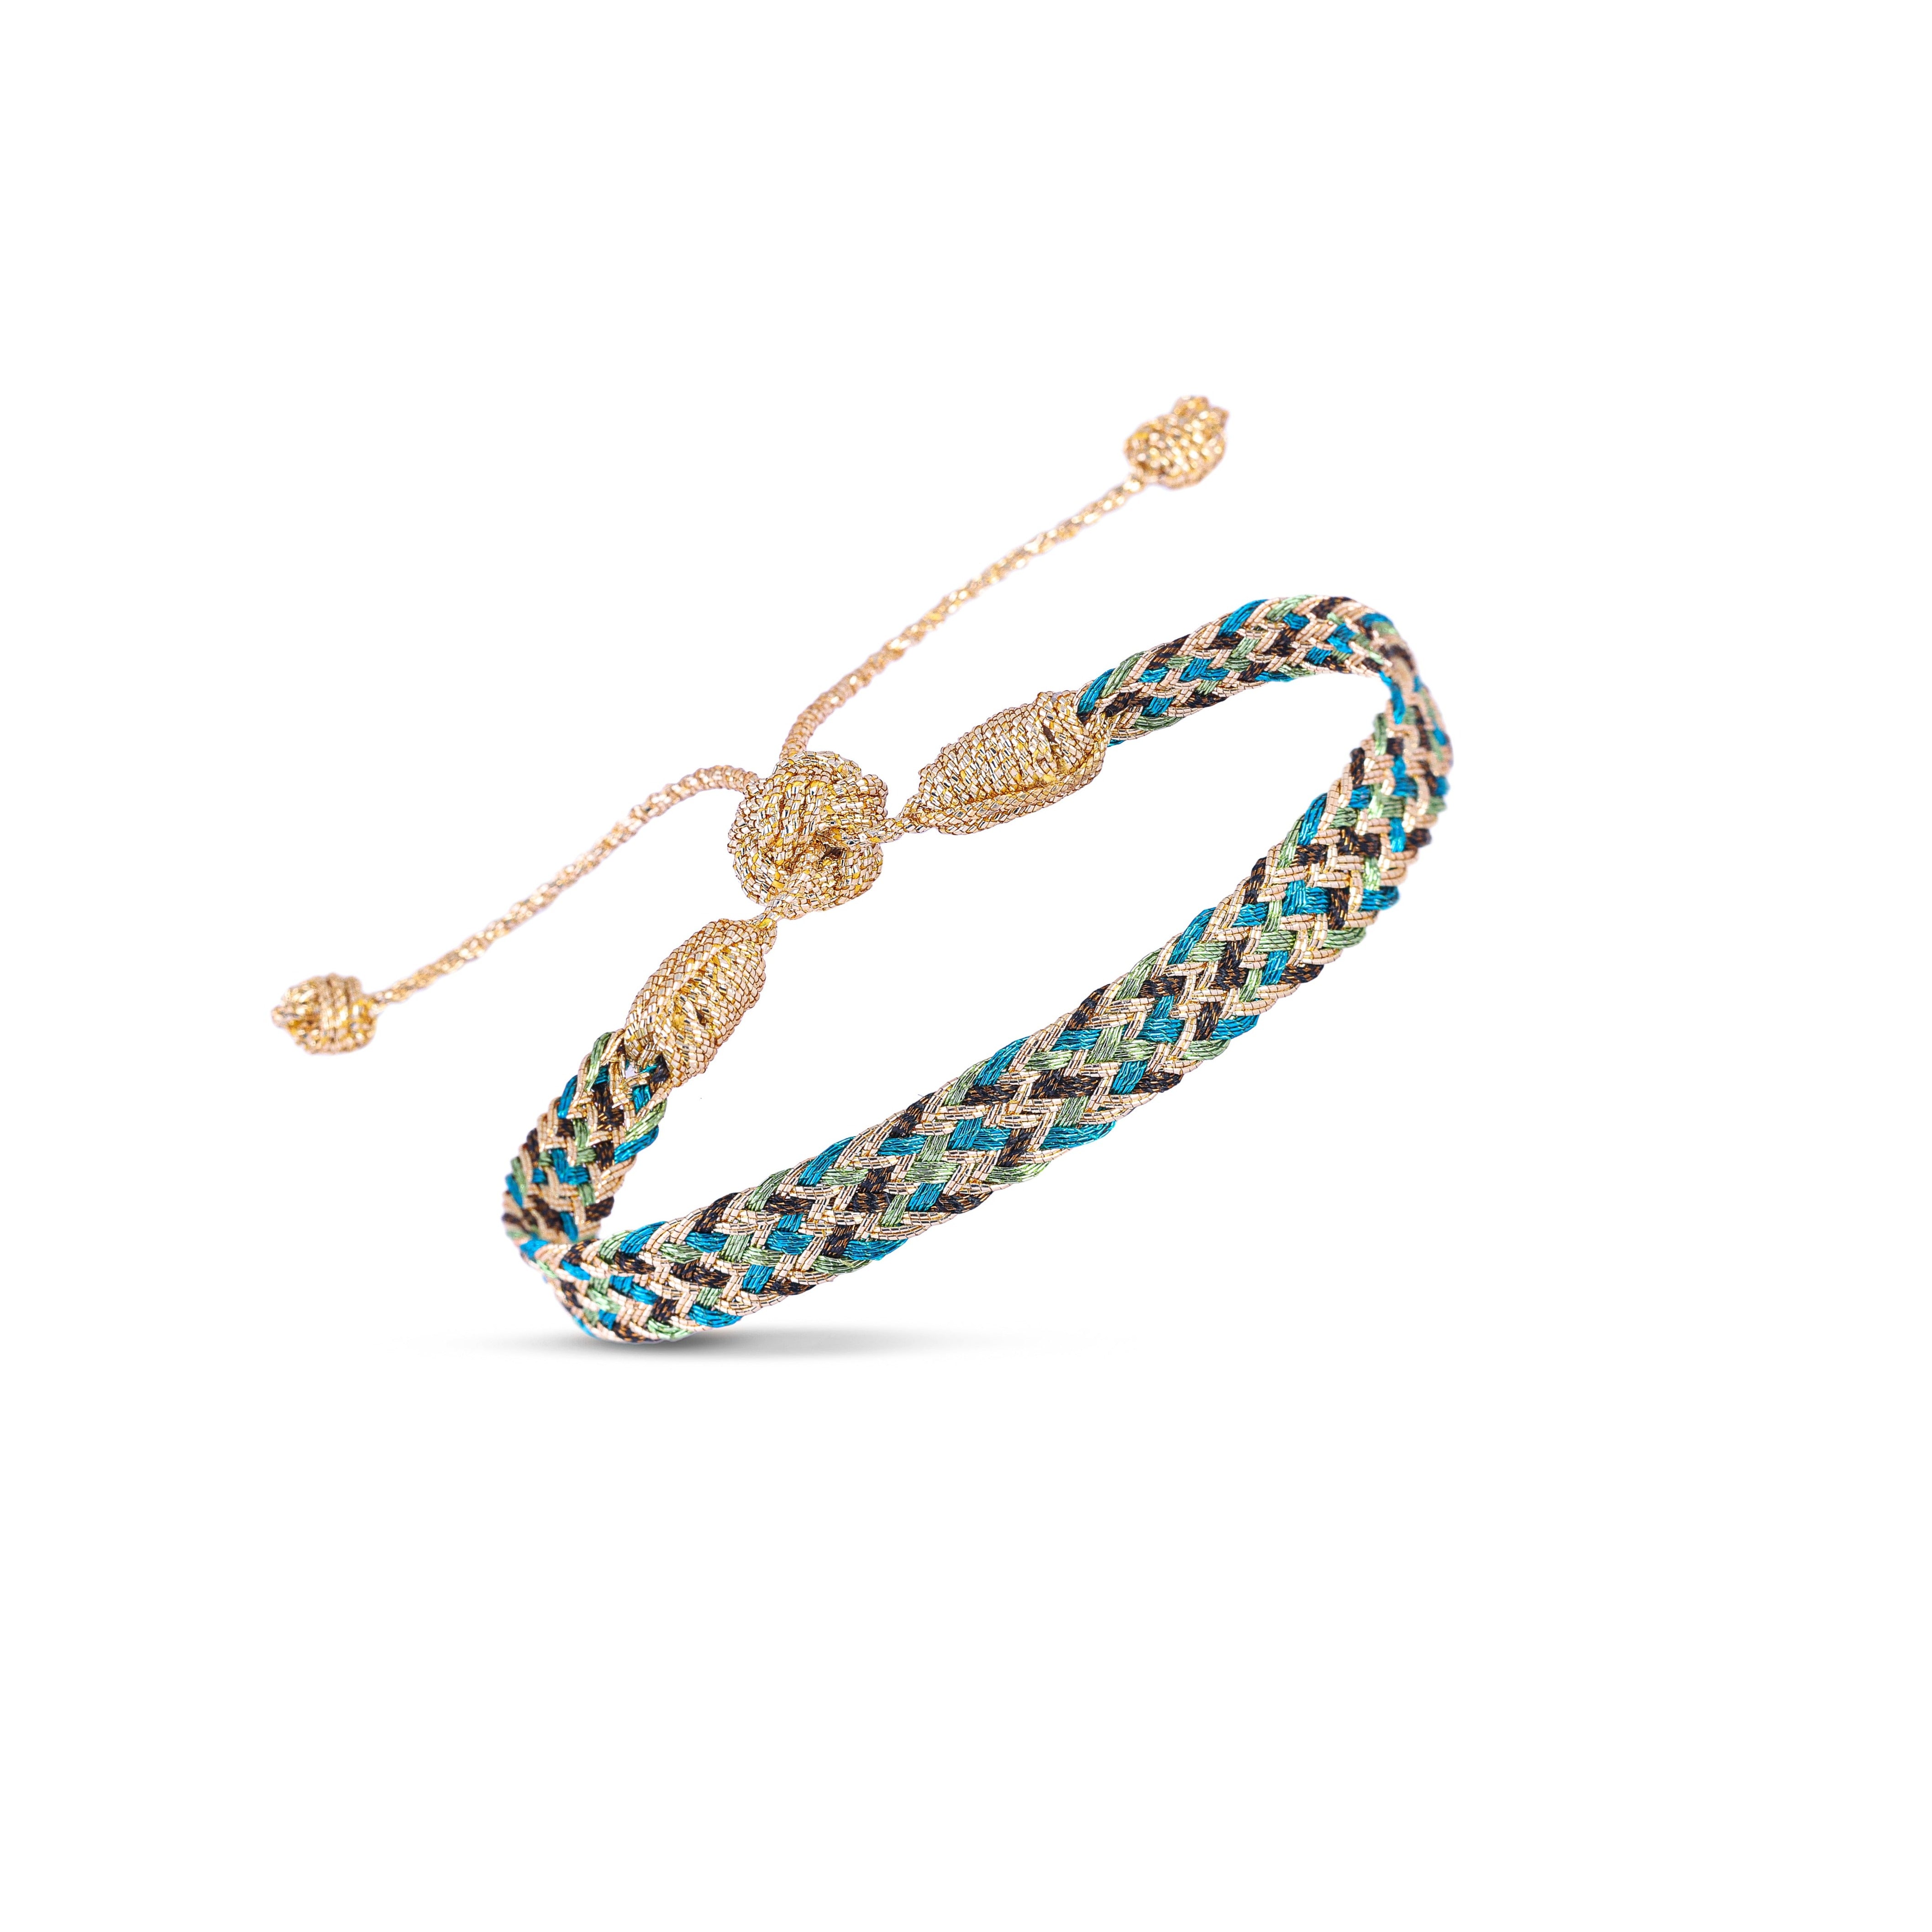 Ania n°2 Bracelet in Gold Olive Teal Blue